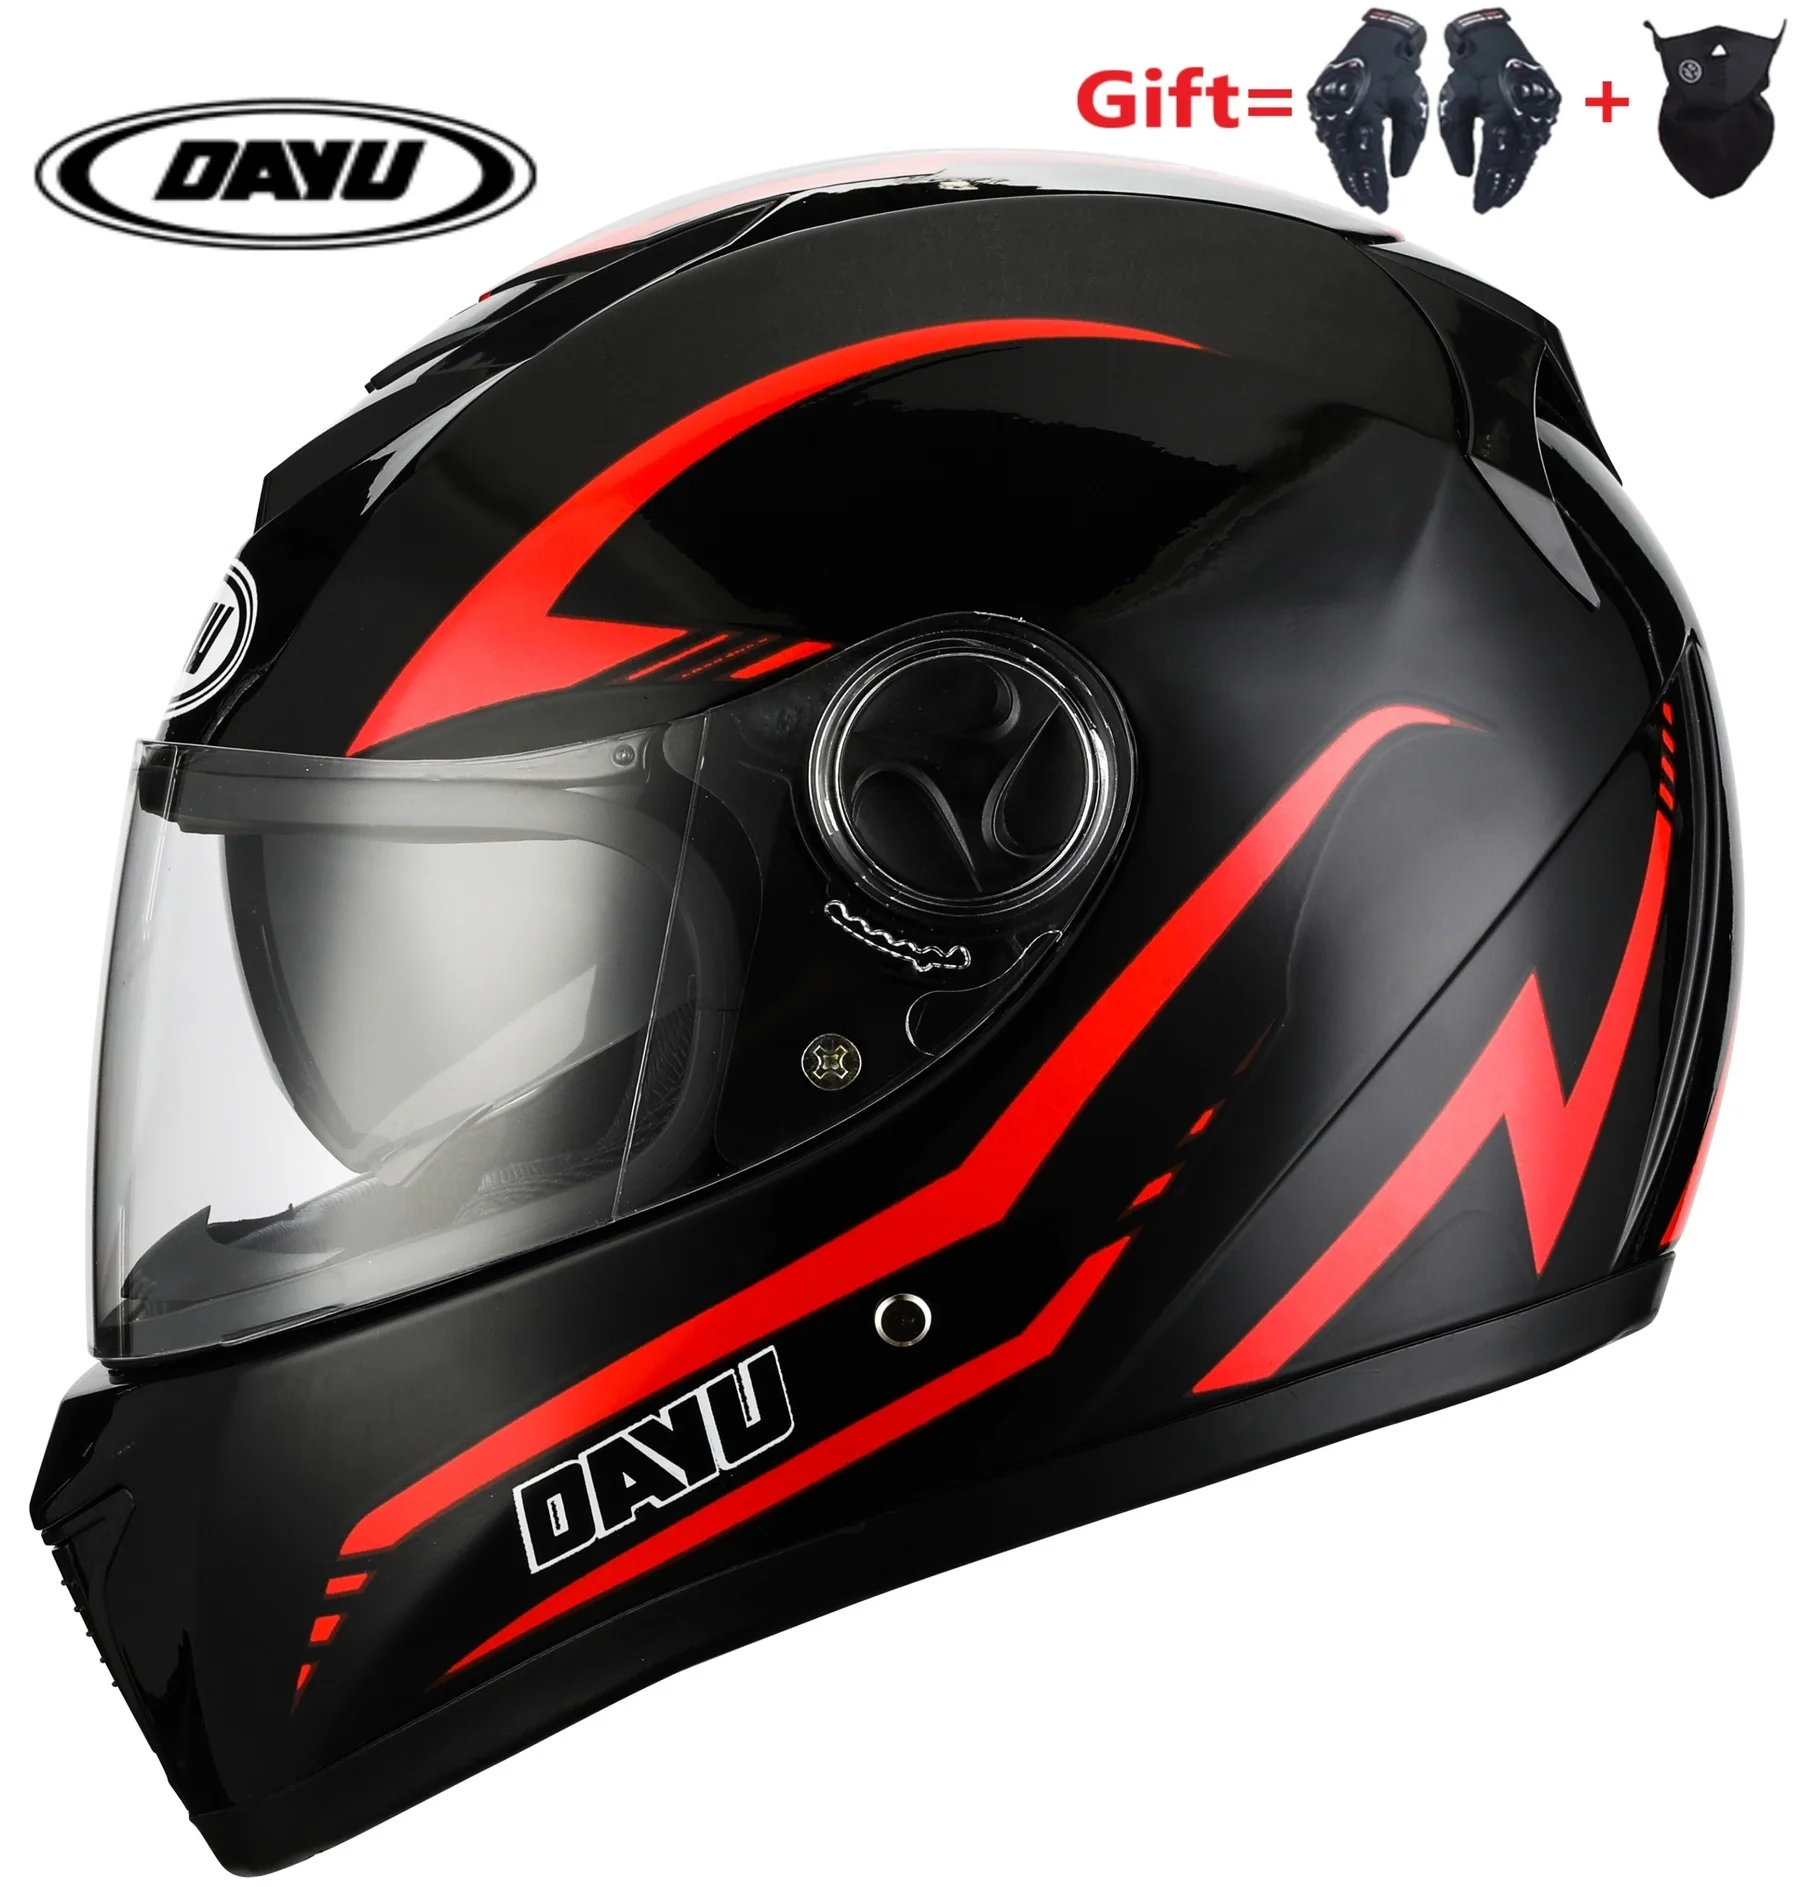 2021 Dot Certified 2 Gifts Off Road Full Face Motorcycle Helmet Dual Lens Double Visors Dirt Bike For Moto Sport For Man Women - Helmets